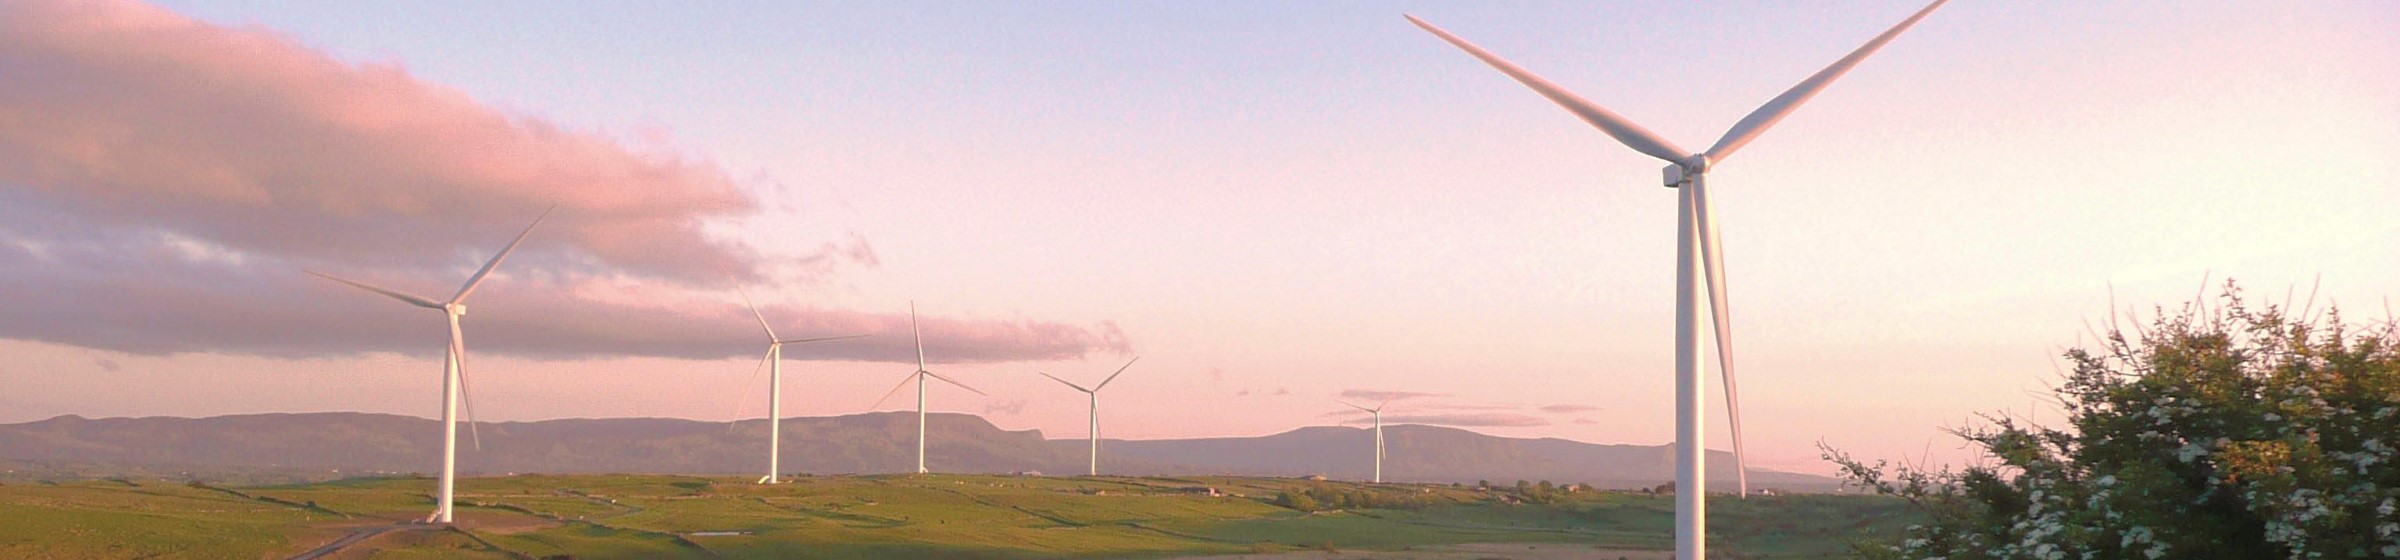 Windpark in pinken Sonnenaufgang